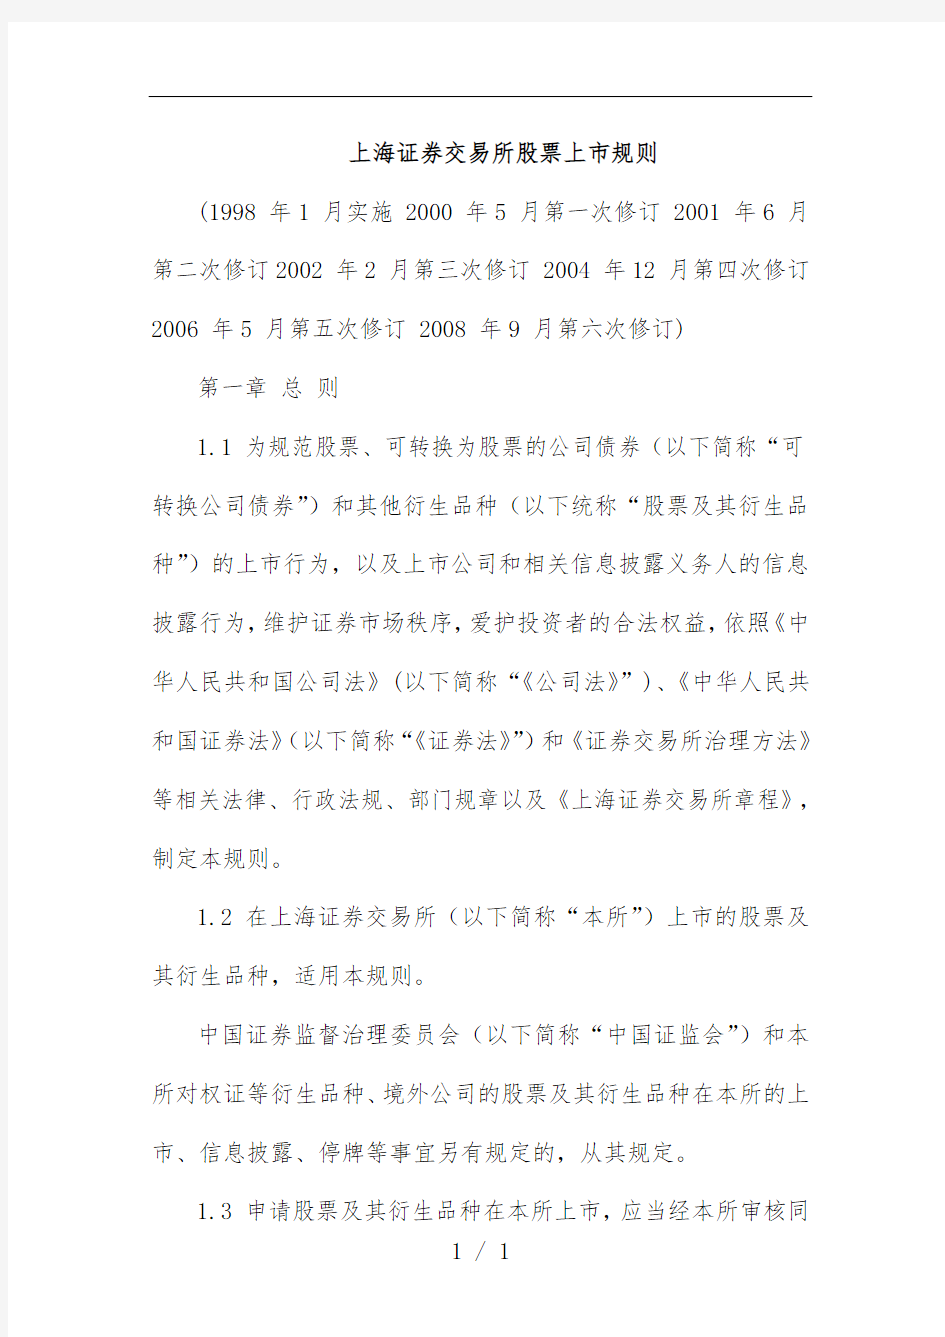 上海证券交易所股票上市细则文件